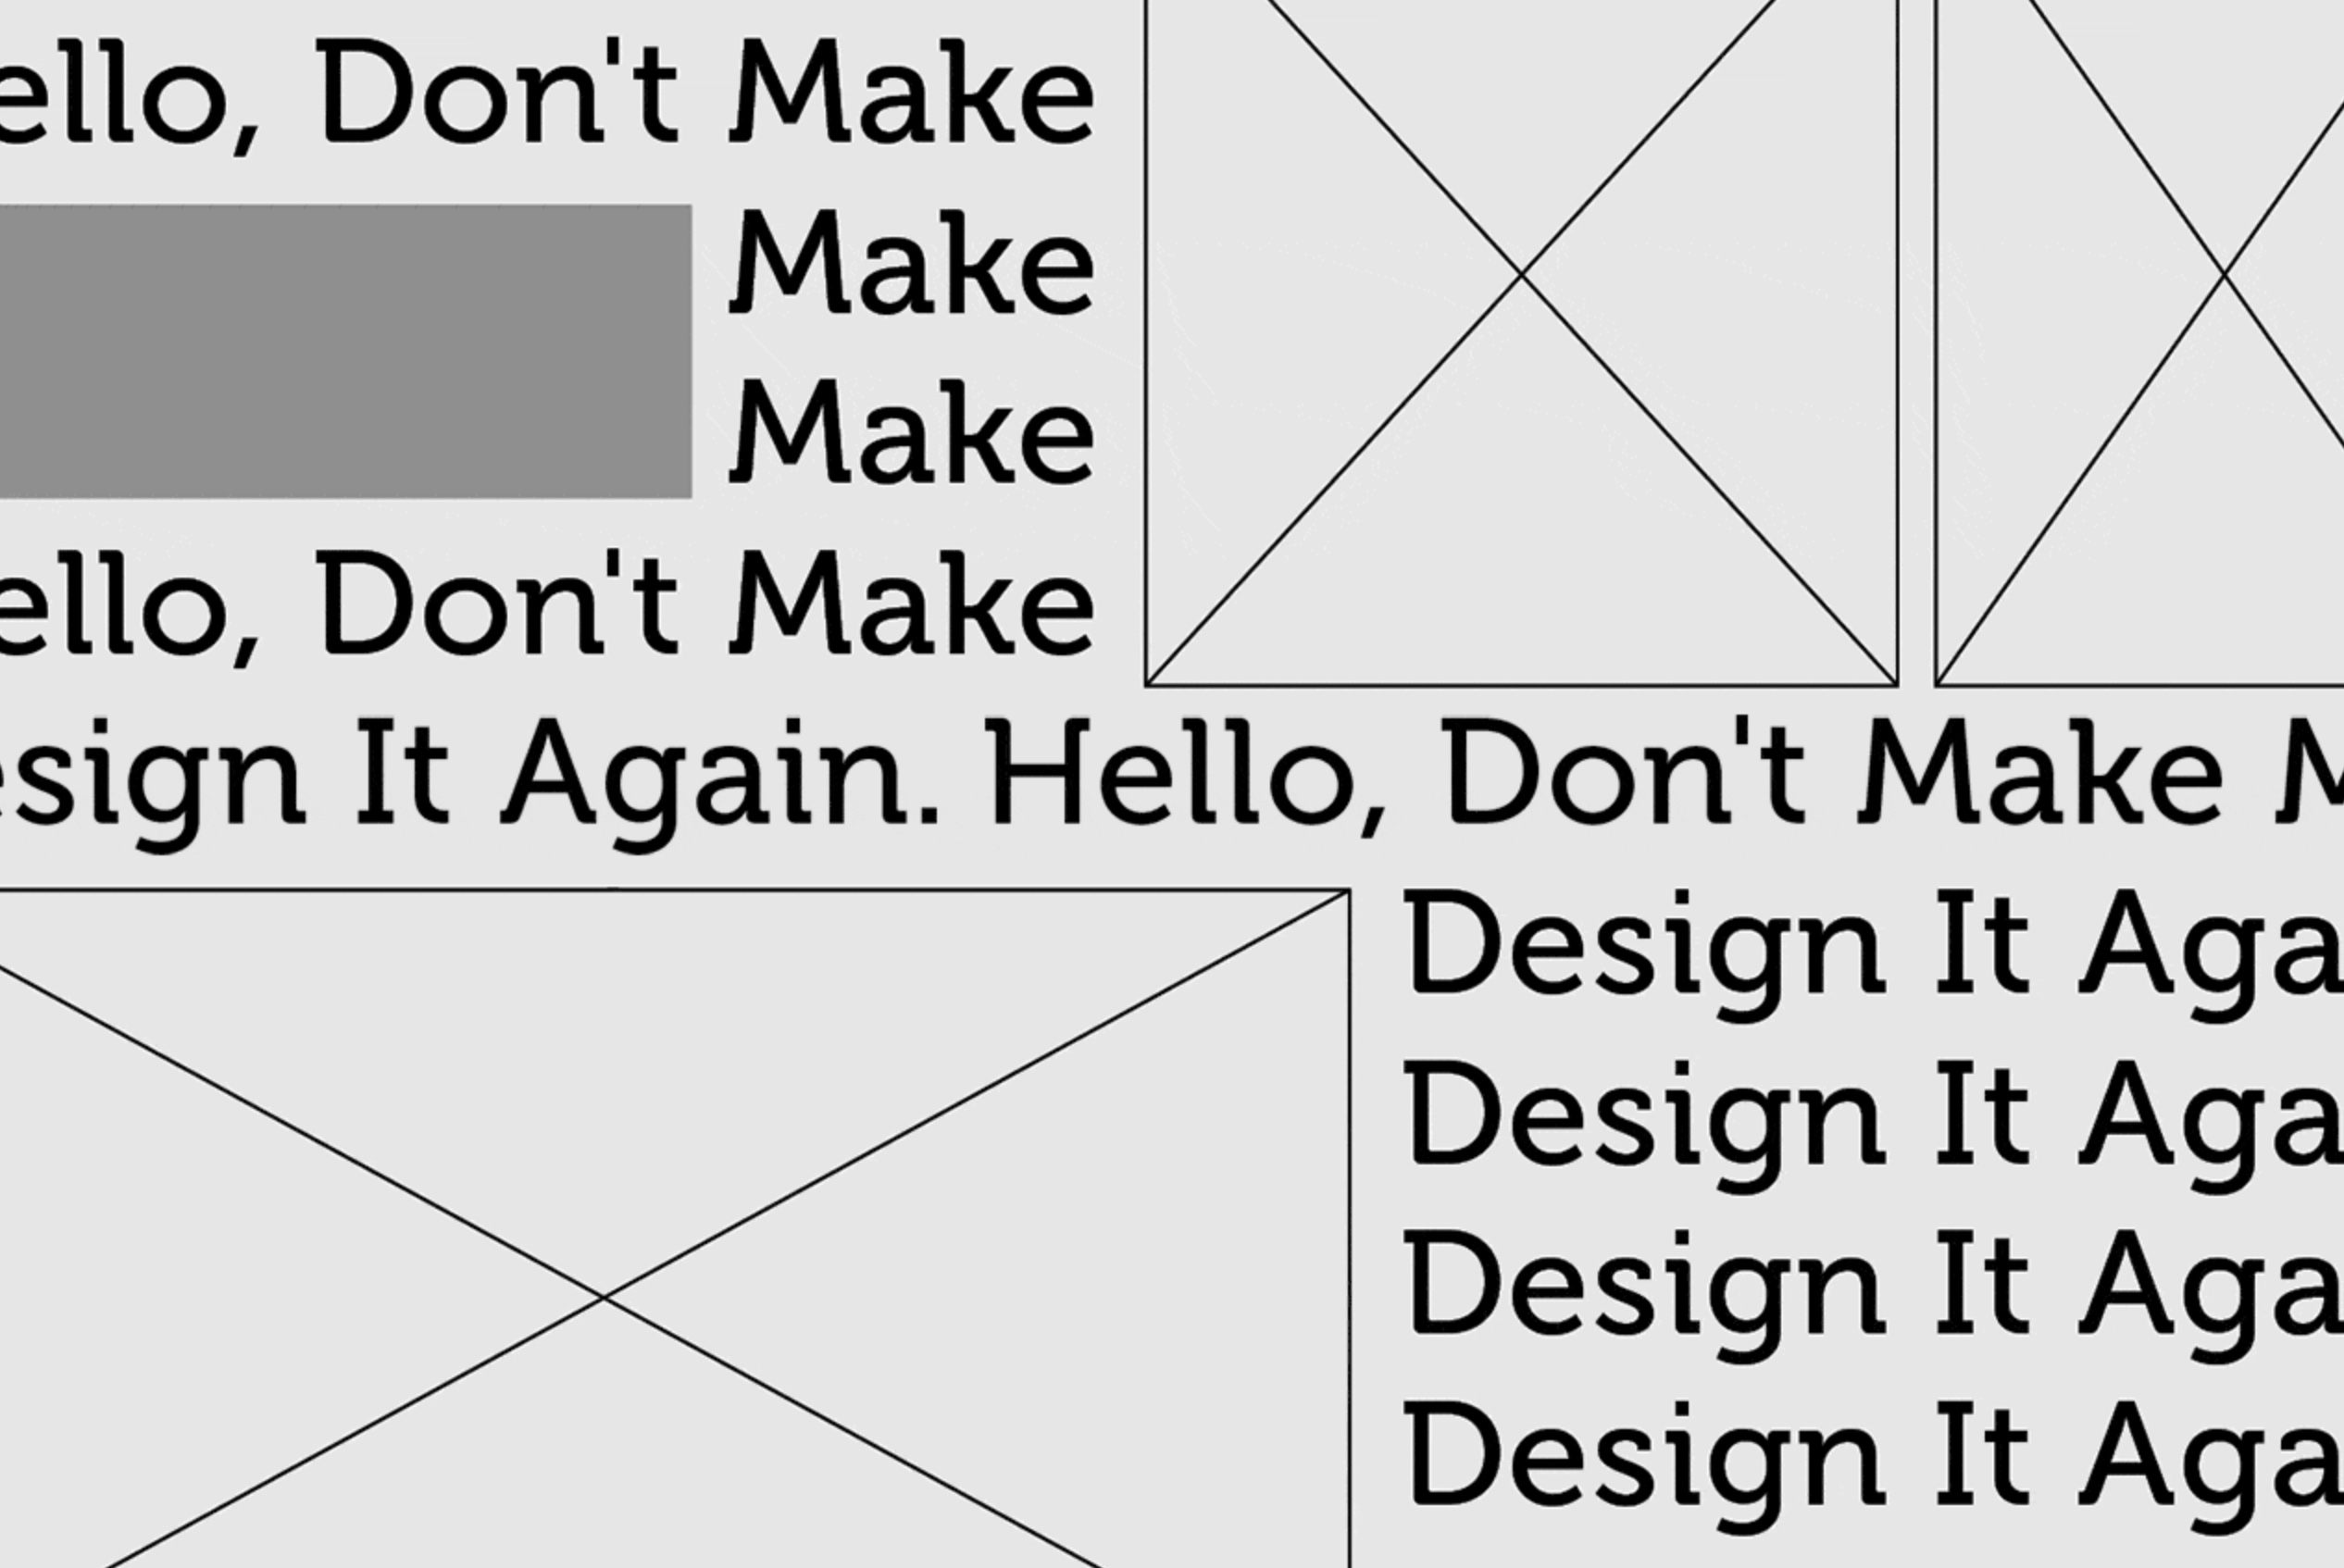 Hello, Don’t Make Me Design It Again.